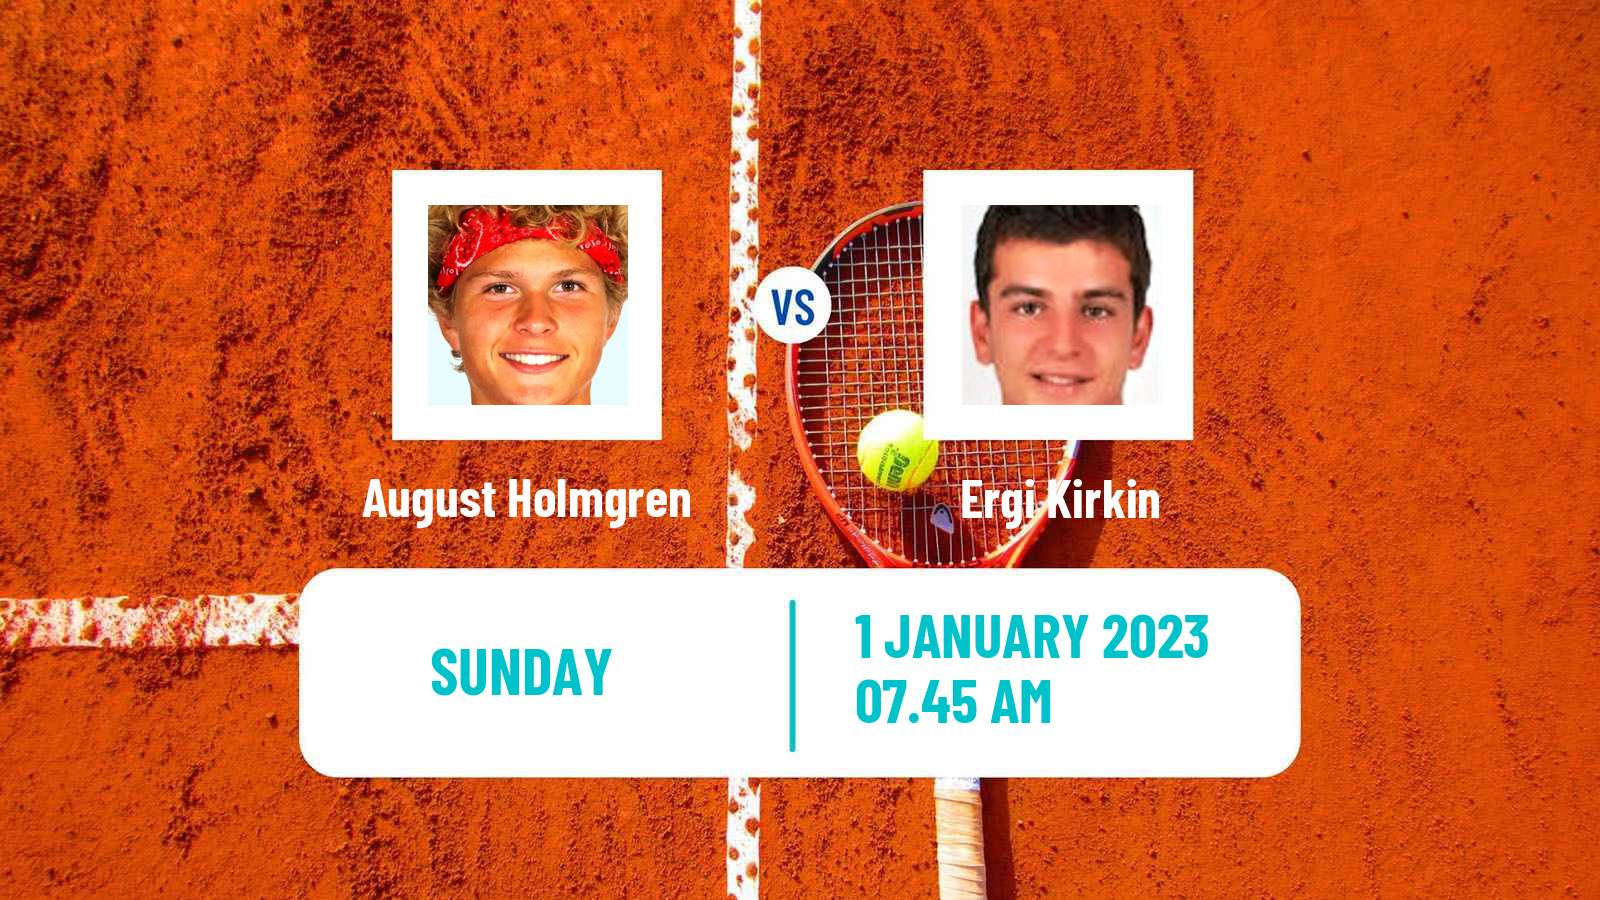 Tennis ATP Challenger August Holmgren - Ergi Kirkin